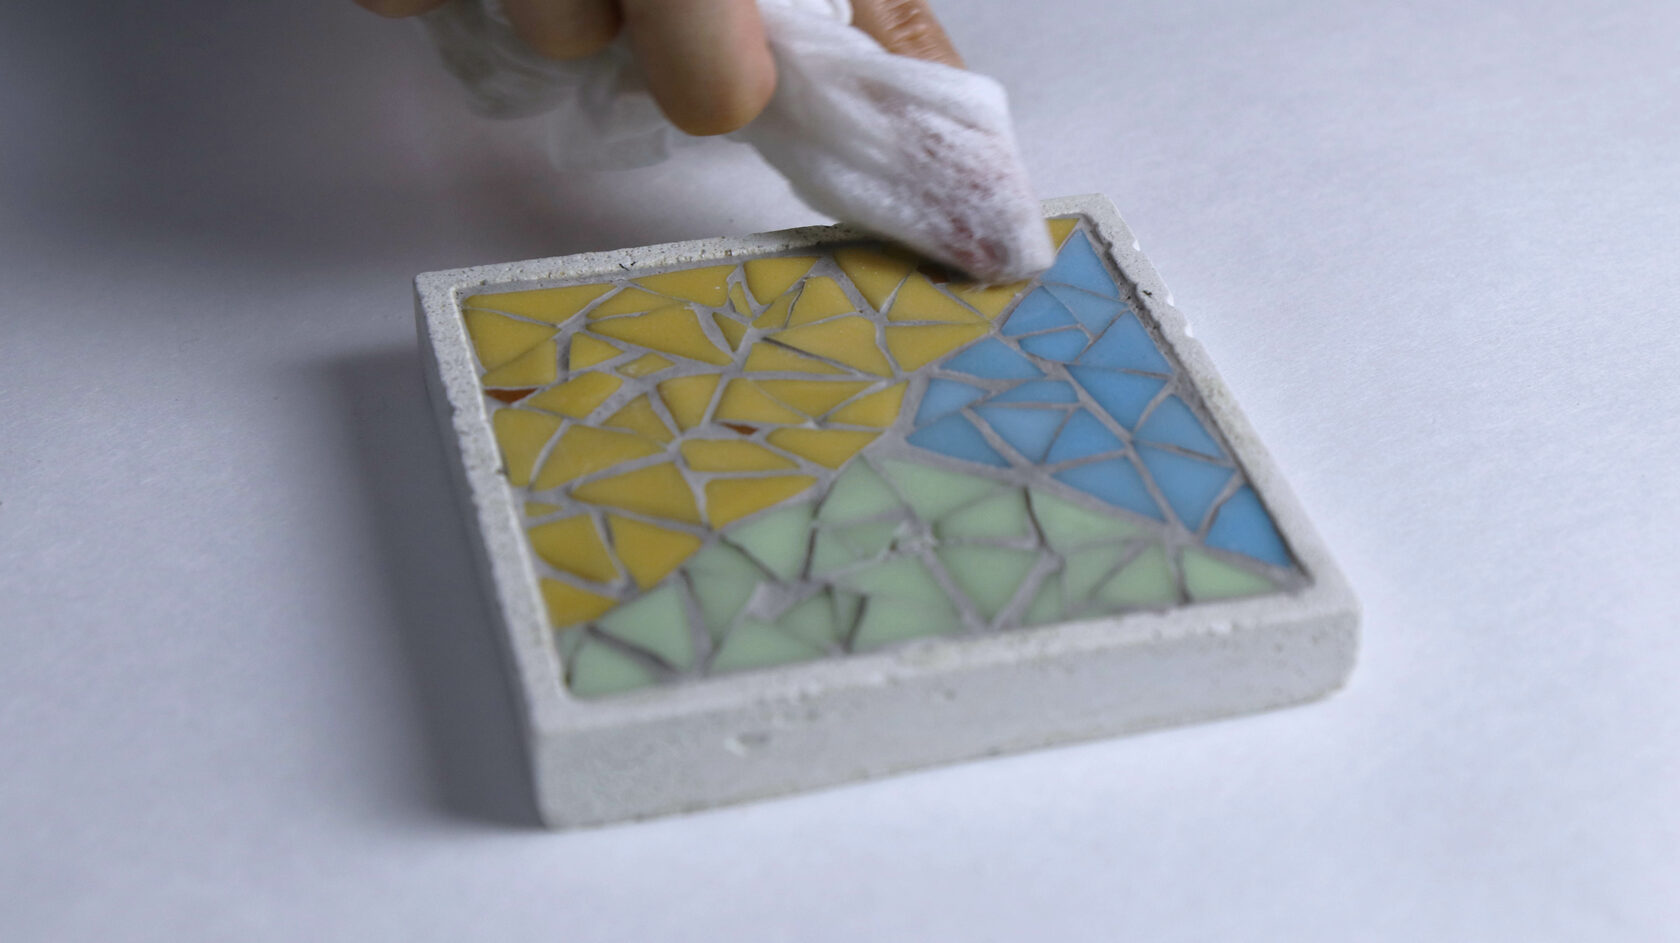 Рисунки и схемы для мозаичной плитки: декор своими руками